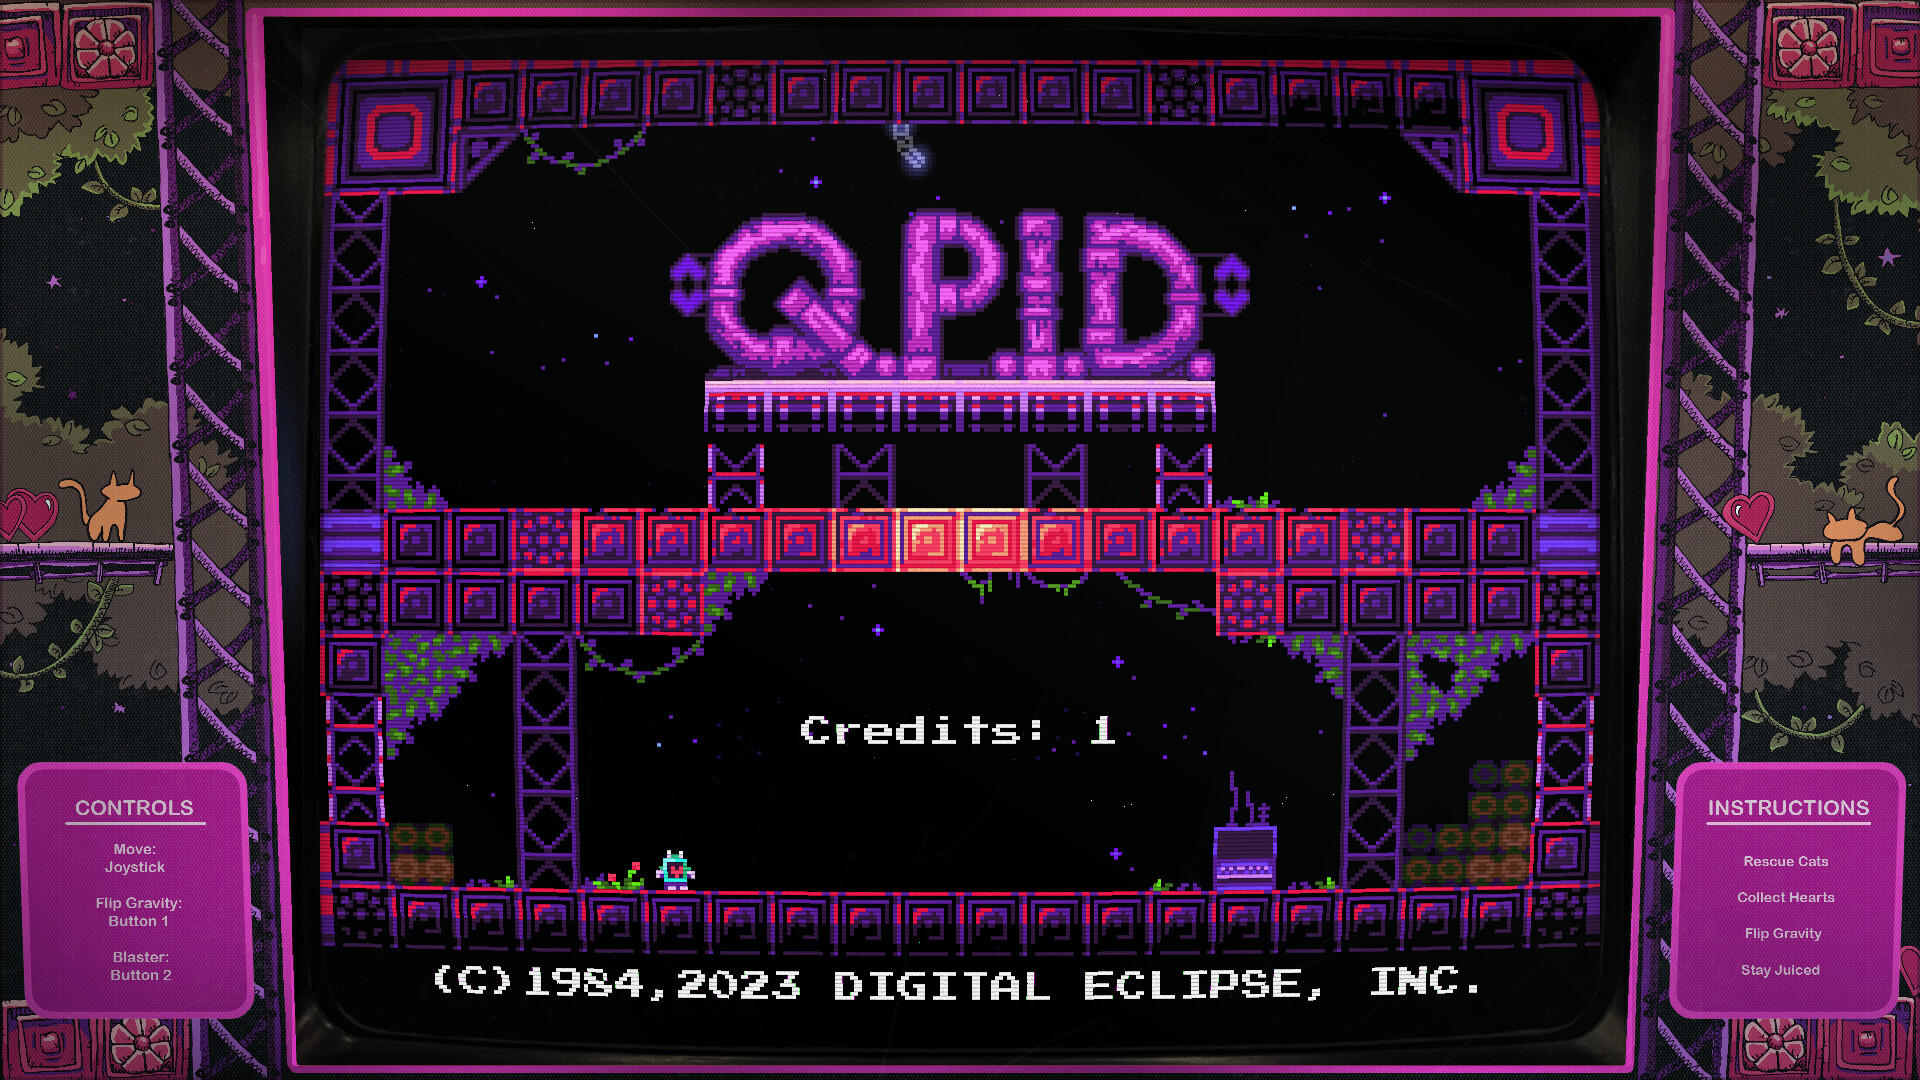 Screenshot 1 of Digital Eclipse Arcade៖ QPID 